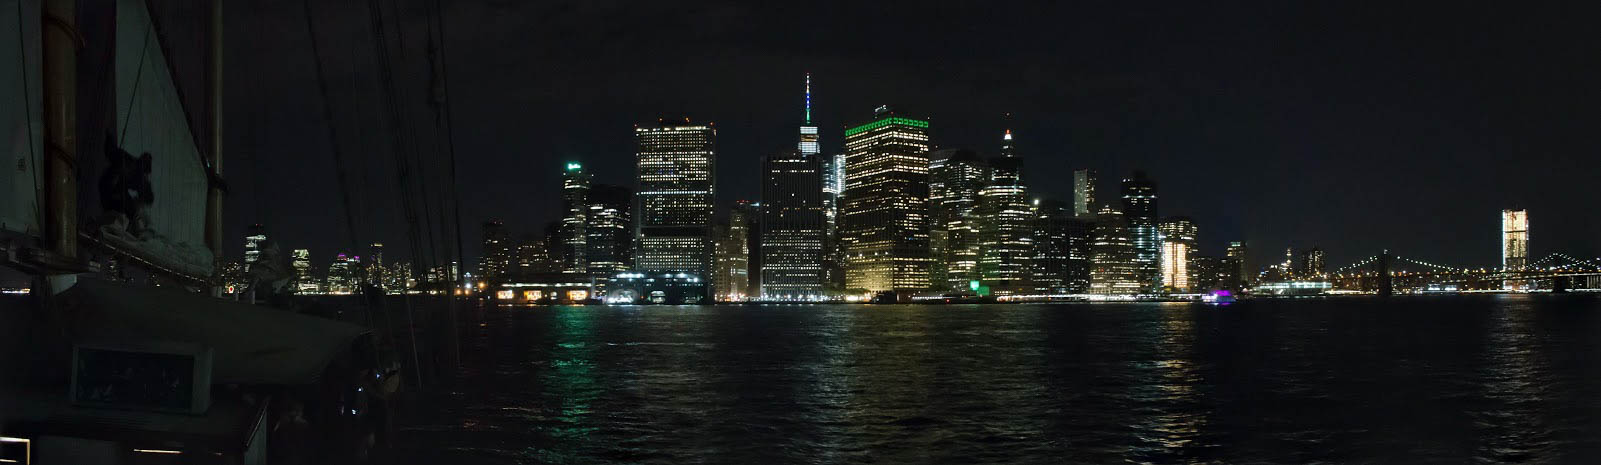 New York by Night boat...